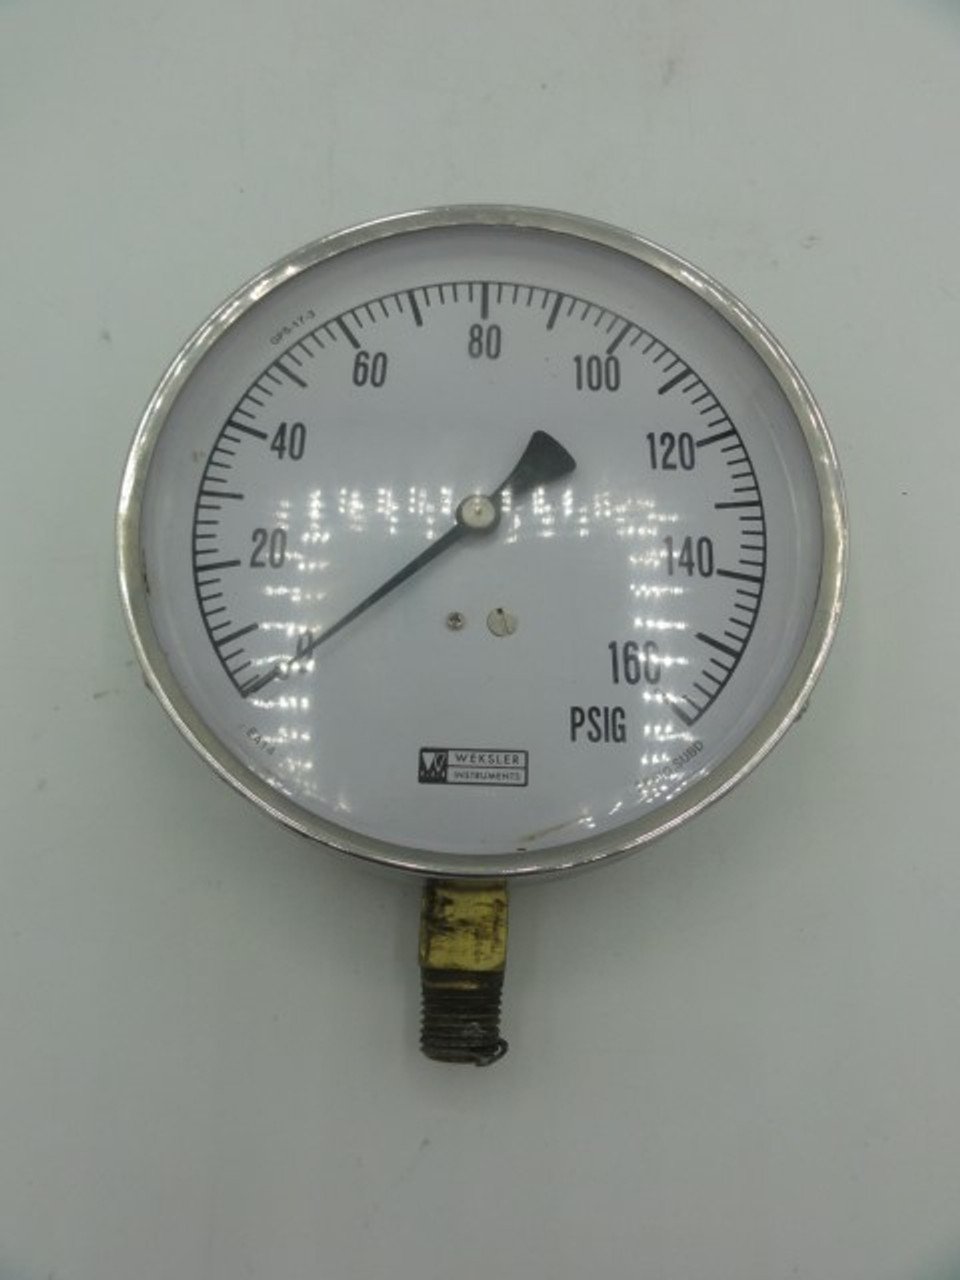 Weskler Instruments 160 PSIG Pressure Gauge